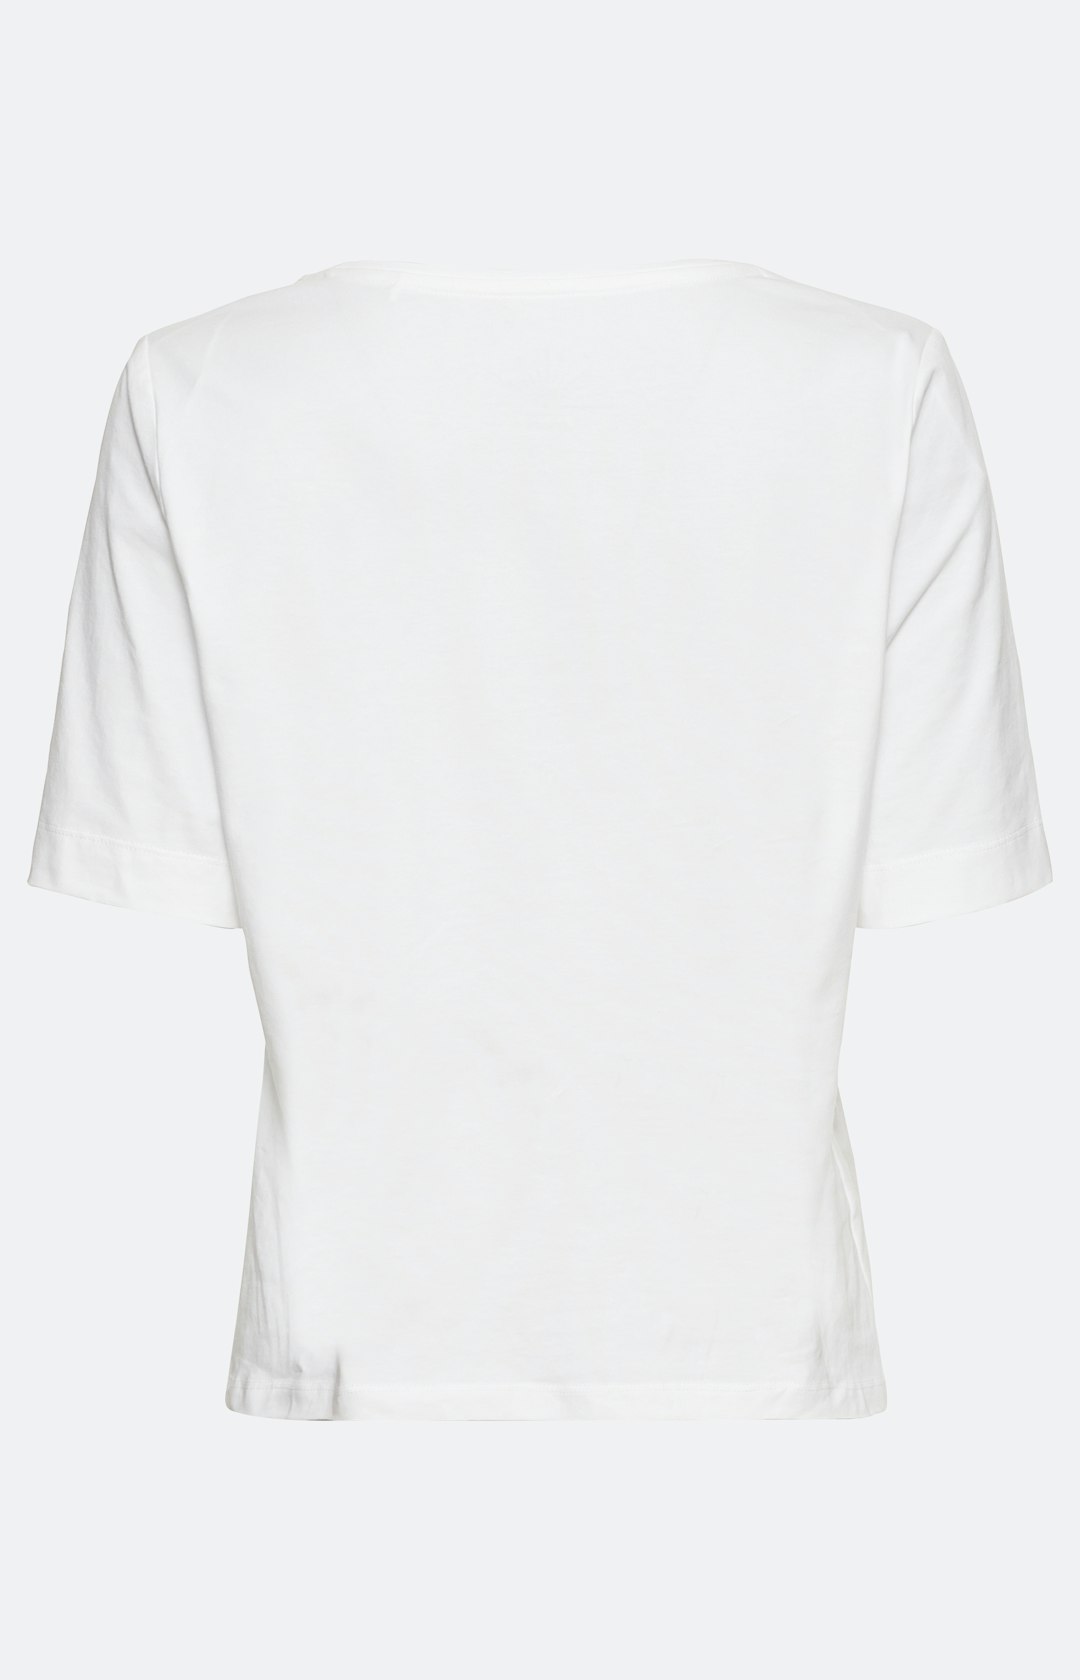 Schmales Basic Shirt aus Bio-Baumwolle